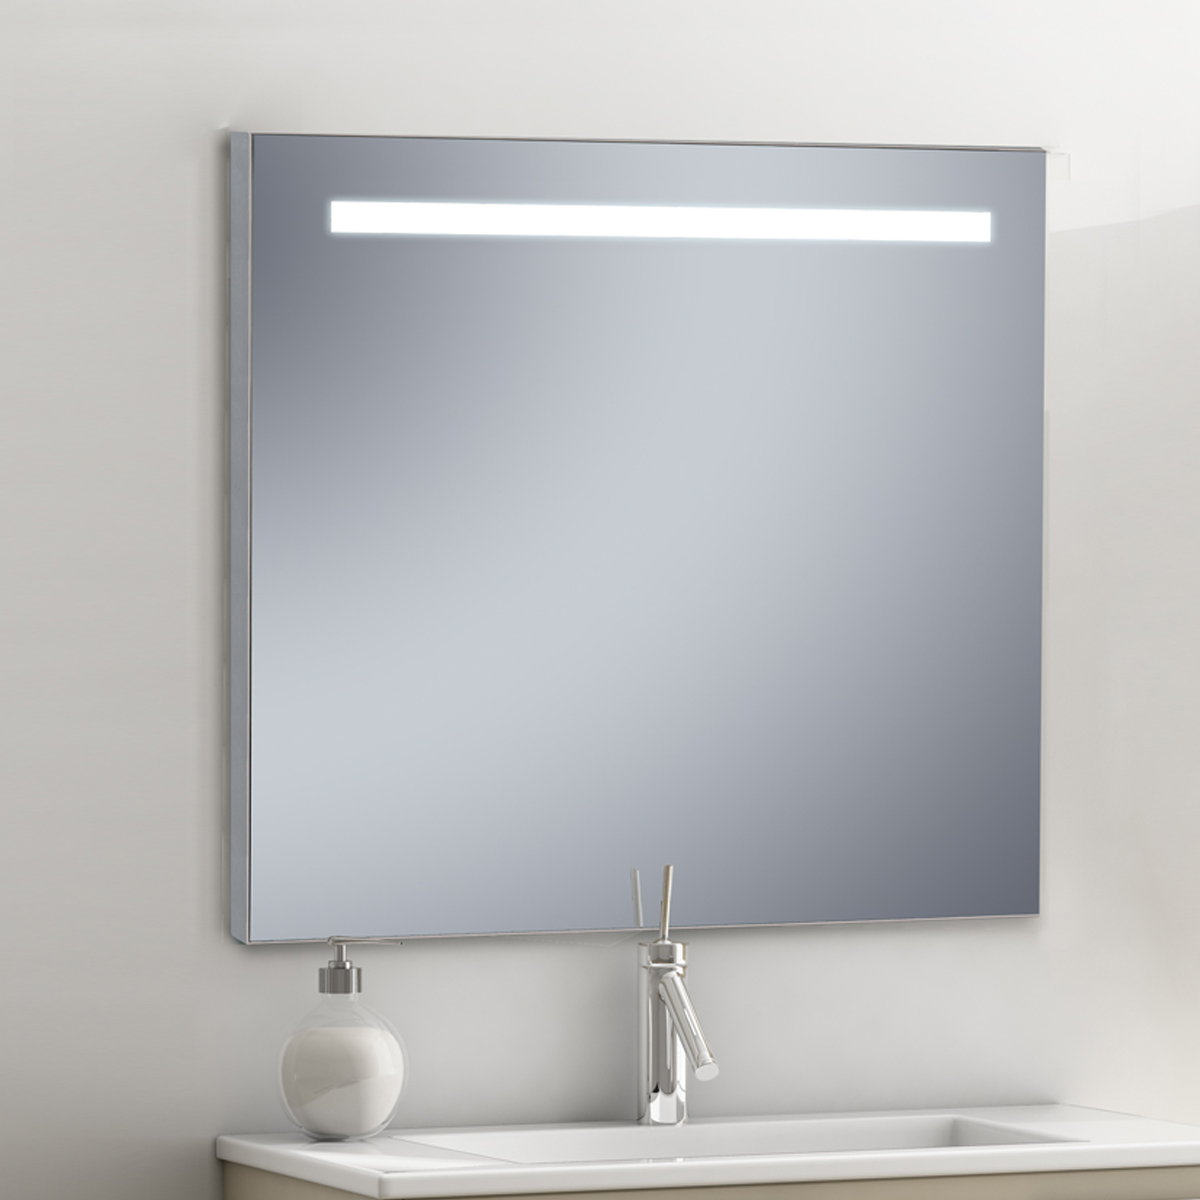 Cómo instalar espejo con LUZ LED?